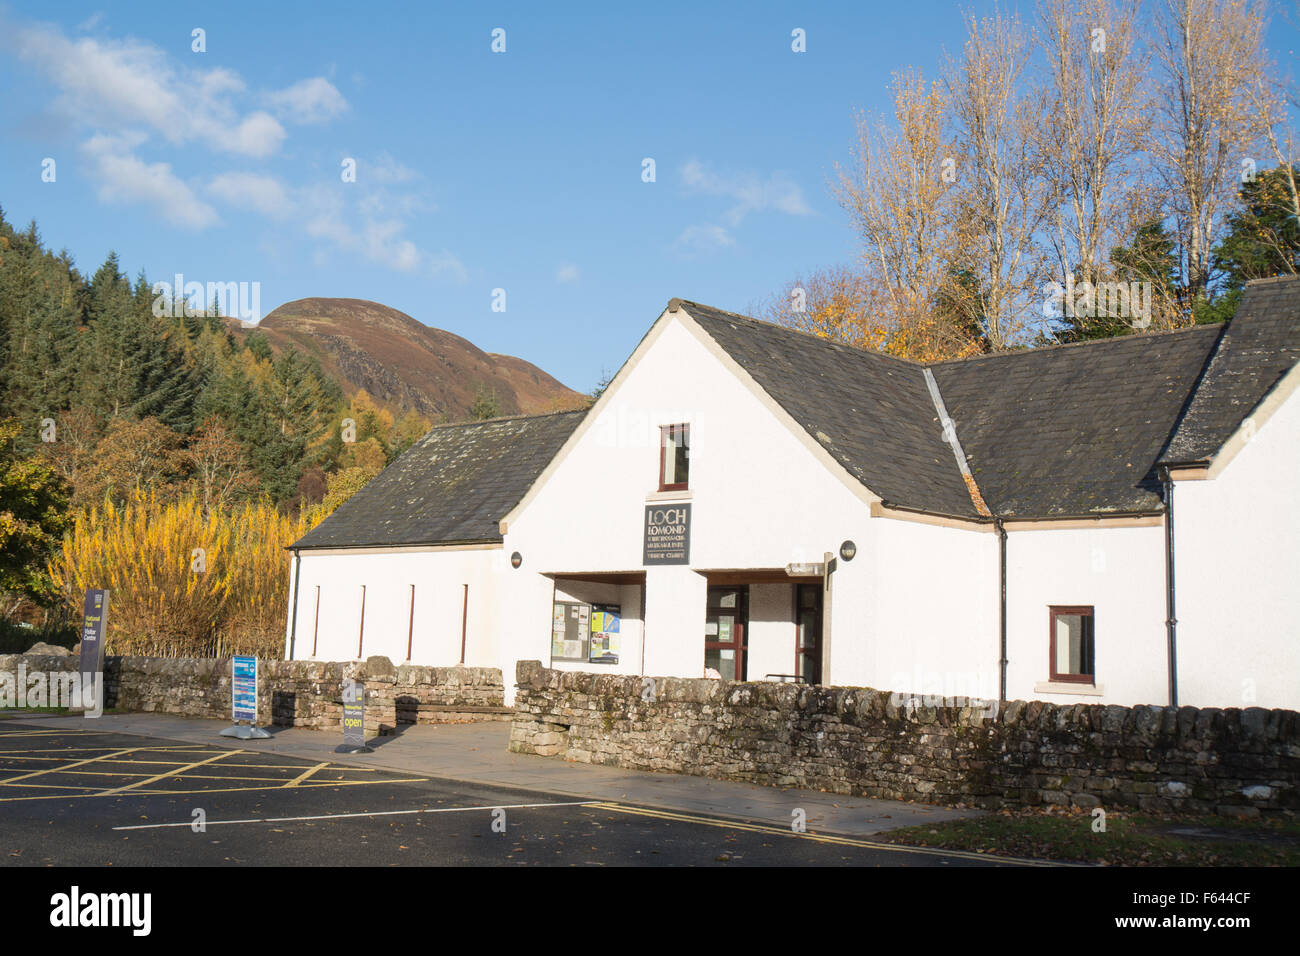 Le Loch Lomond et les Trossachs National Park Visitor Centre, Balmaha, behindvisitor avec Conic Hill Banque D'Images